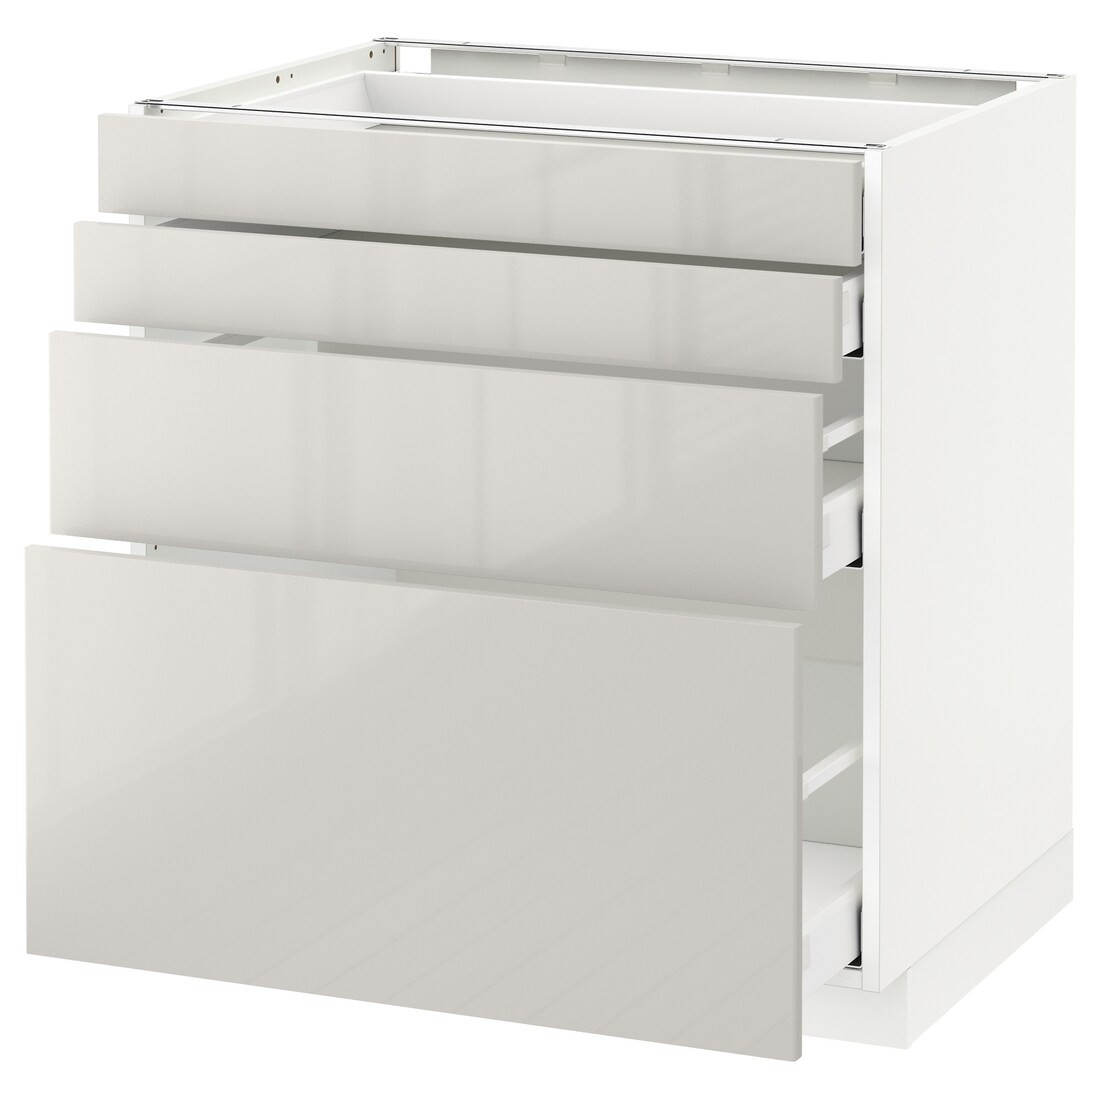 IKEA METOD МЕТОД / MAXIMERA МАКСИМЕРА Напольный шкаф с ящиками, белый / Ringhult светло-серый, 80x60 см 29142508 | 291.425.08